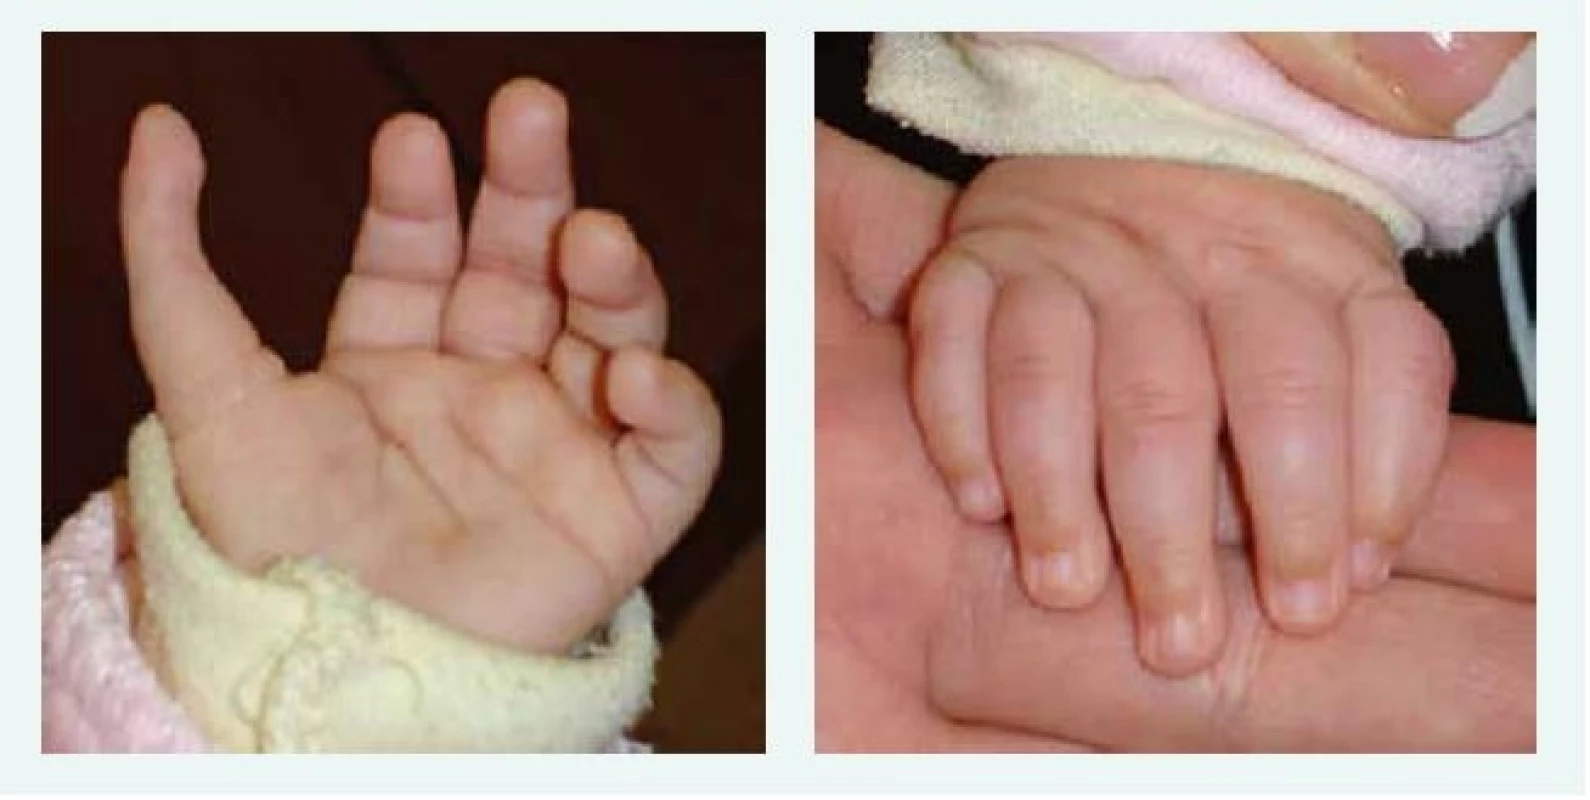 Tříčlánkový palec u kojence s Diamondovou-Blackfanovou anémií. Kromě tříčlánkového palce je patrný
i jeho atypický odstup. Anomálie si vyžádala plastickou operaci.